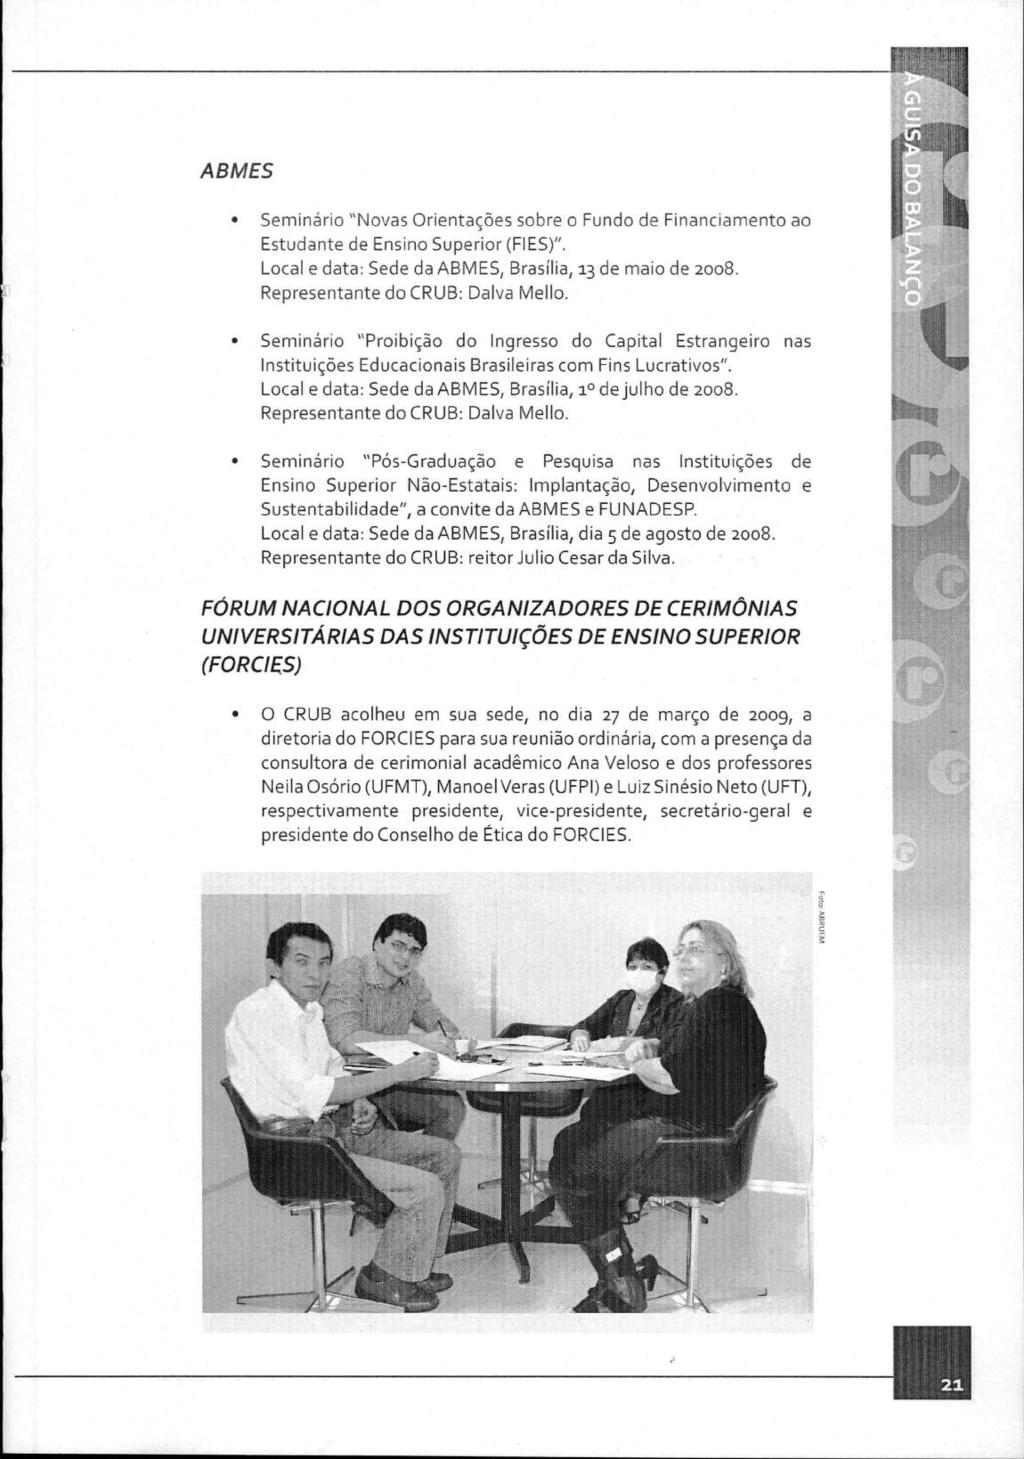 ABMES Seminário "Novas Orientações sobre o Fundo de Financiamento ao Estudante de Ensino Superior (FIES)". Local e data: Sede da ABMES, Brasília, 13 de maio de 2008.